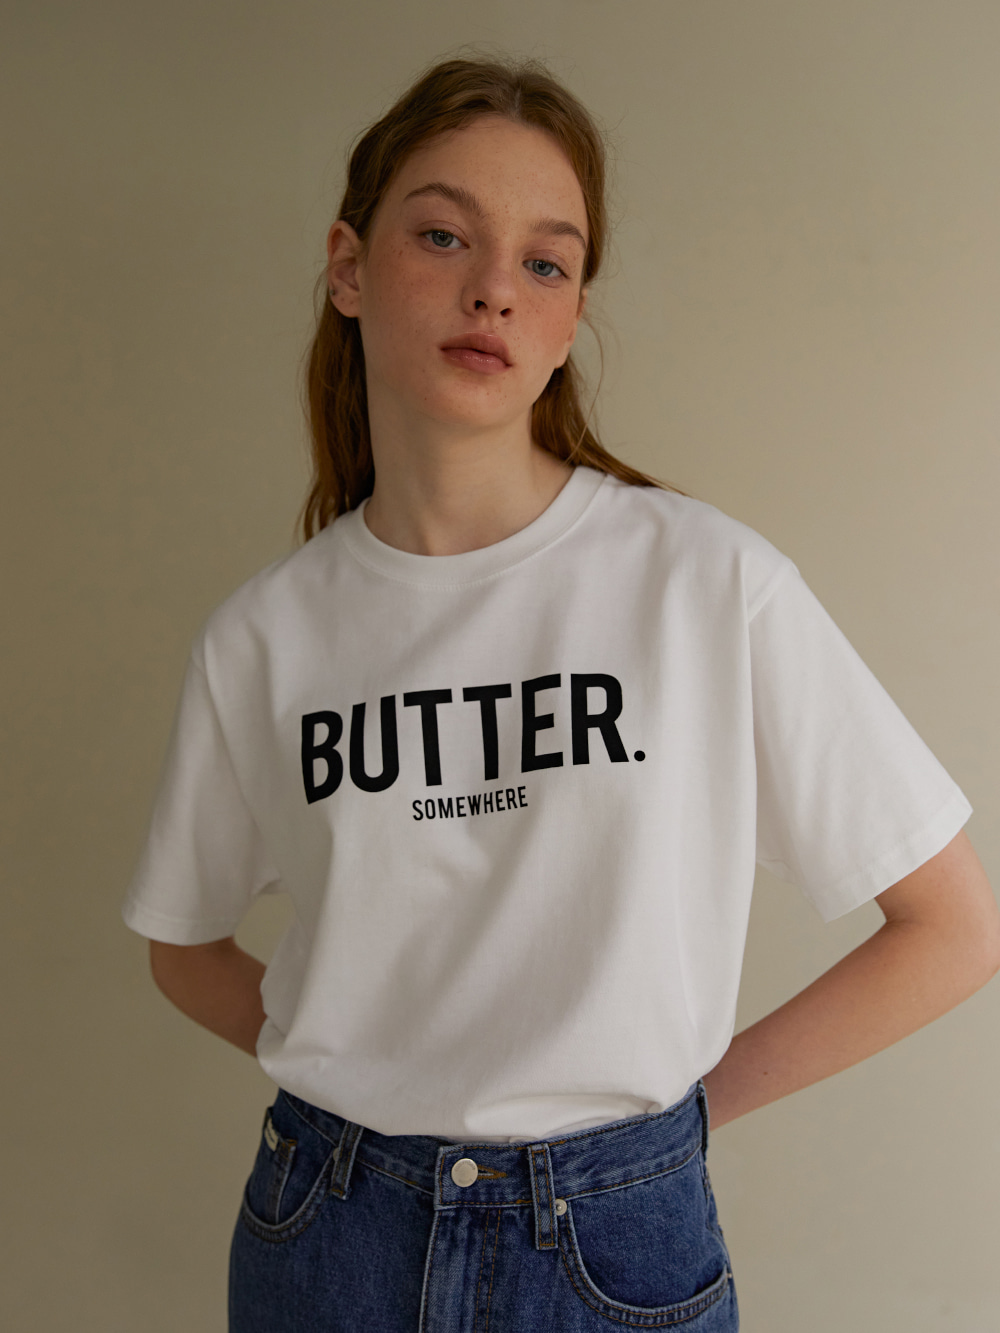 butter tee(regular fit) - ivory